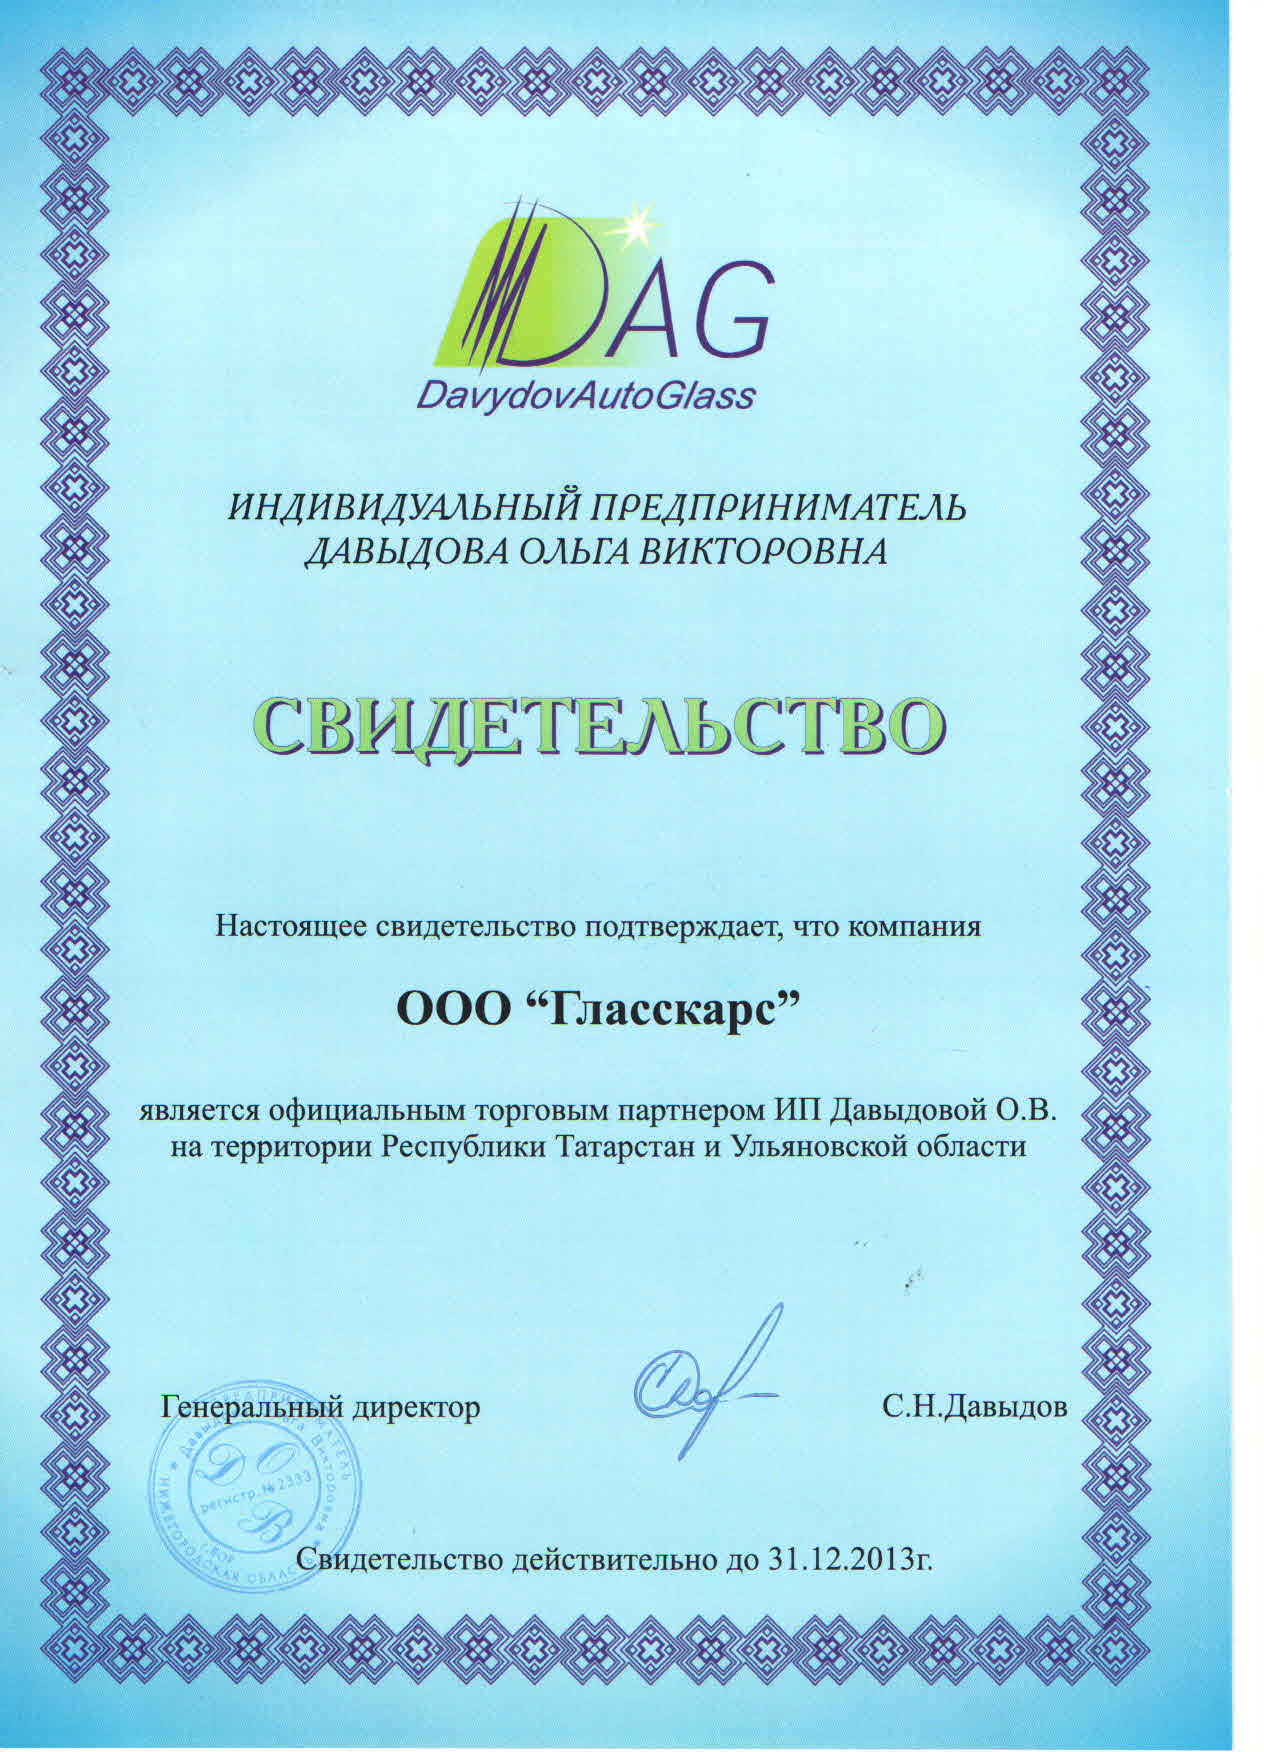 сертификат davydovautoglass